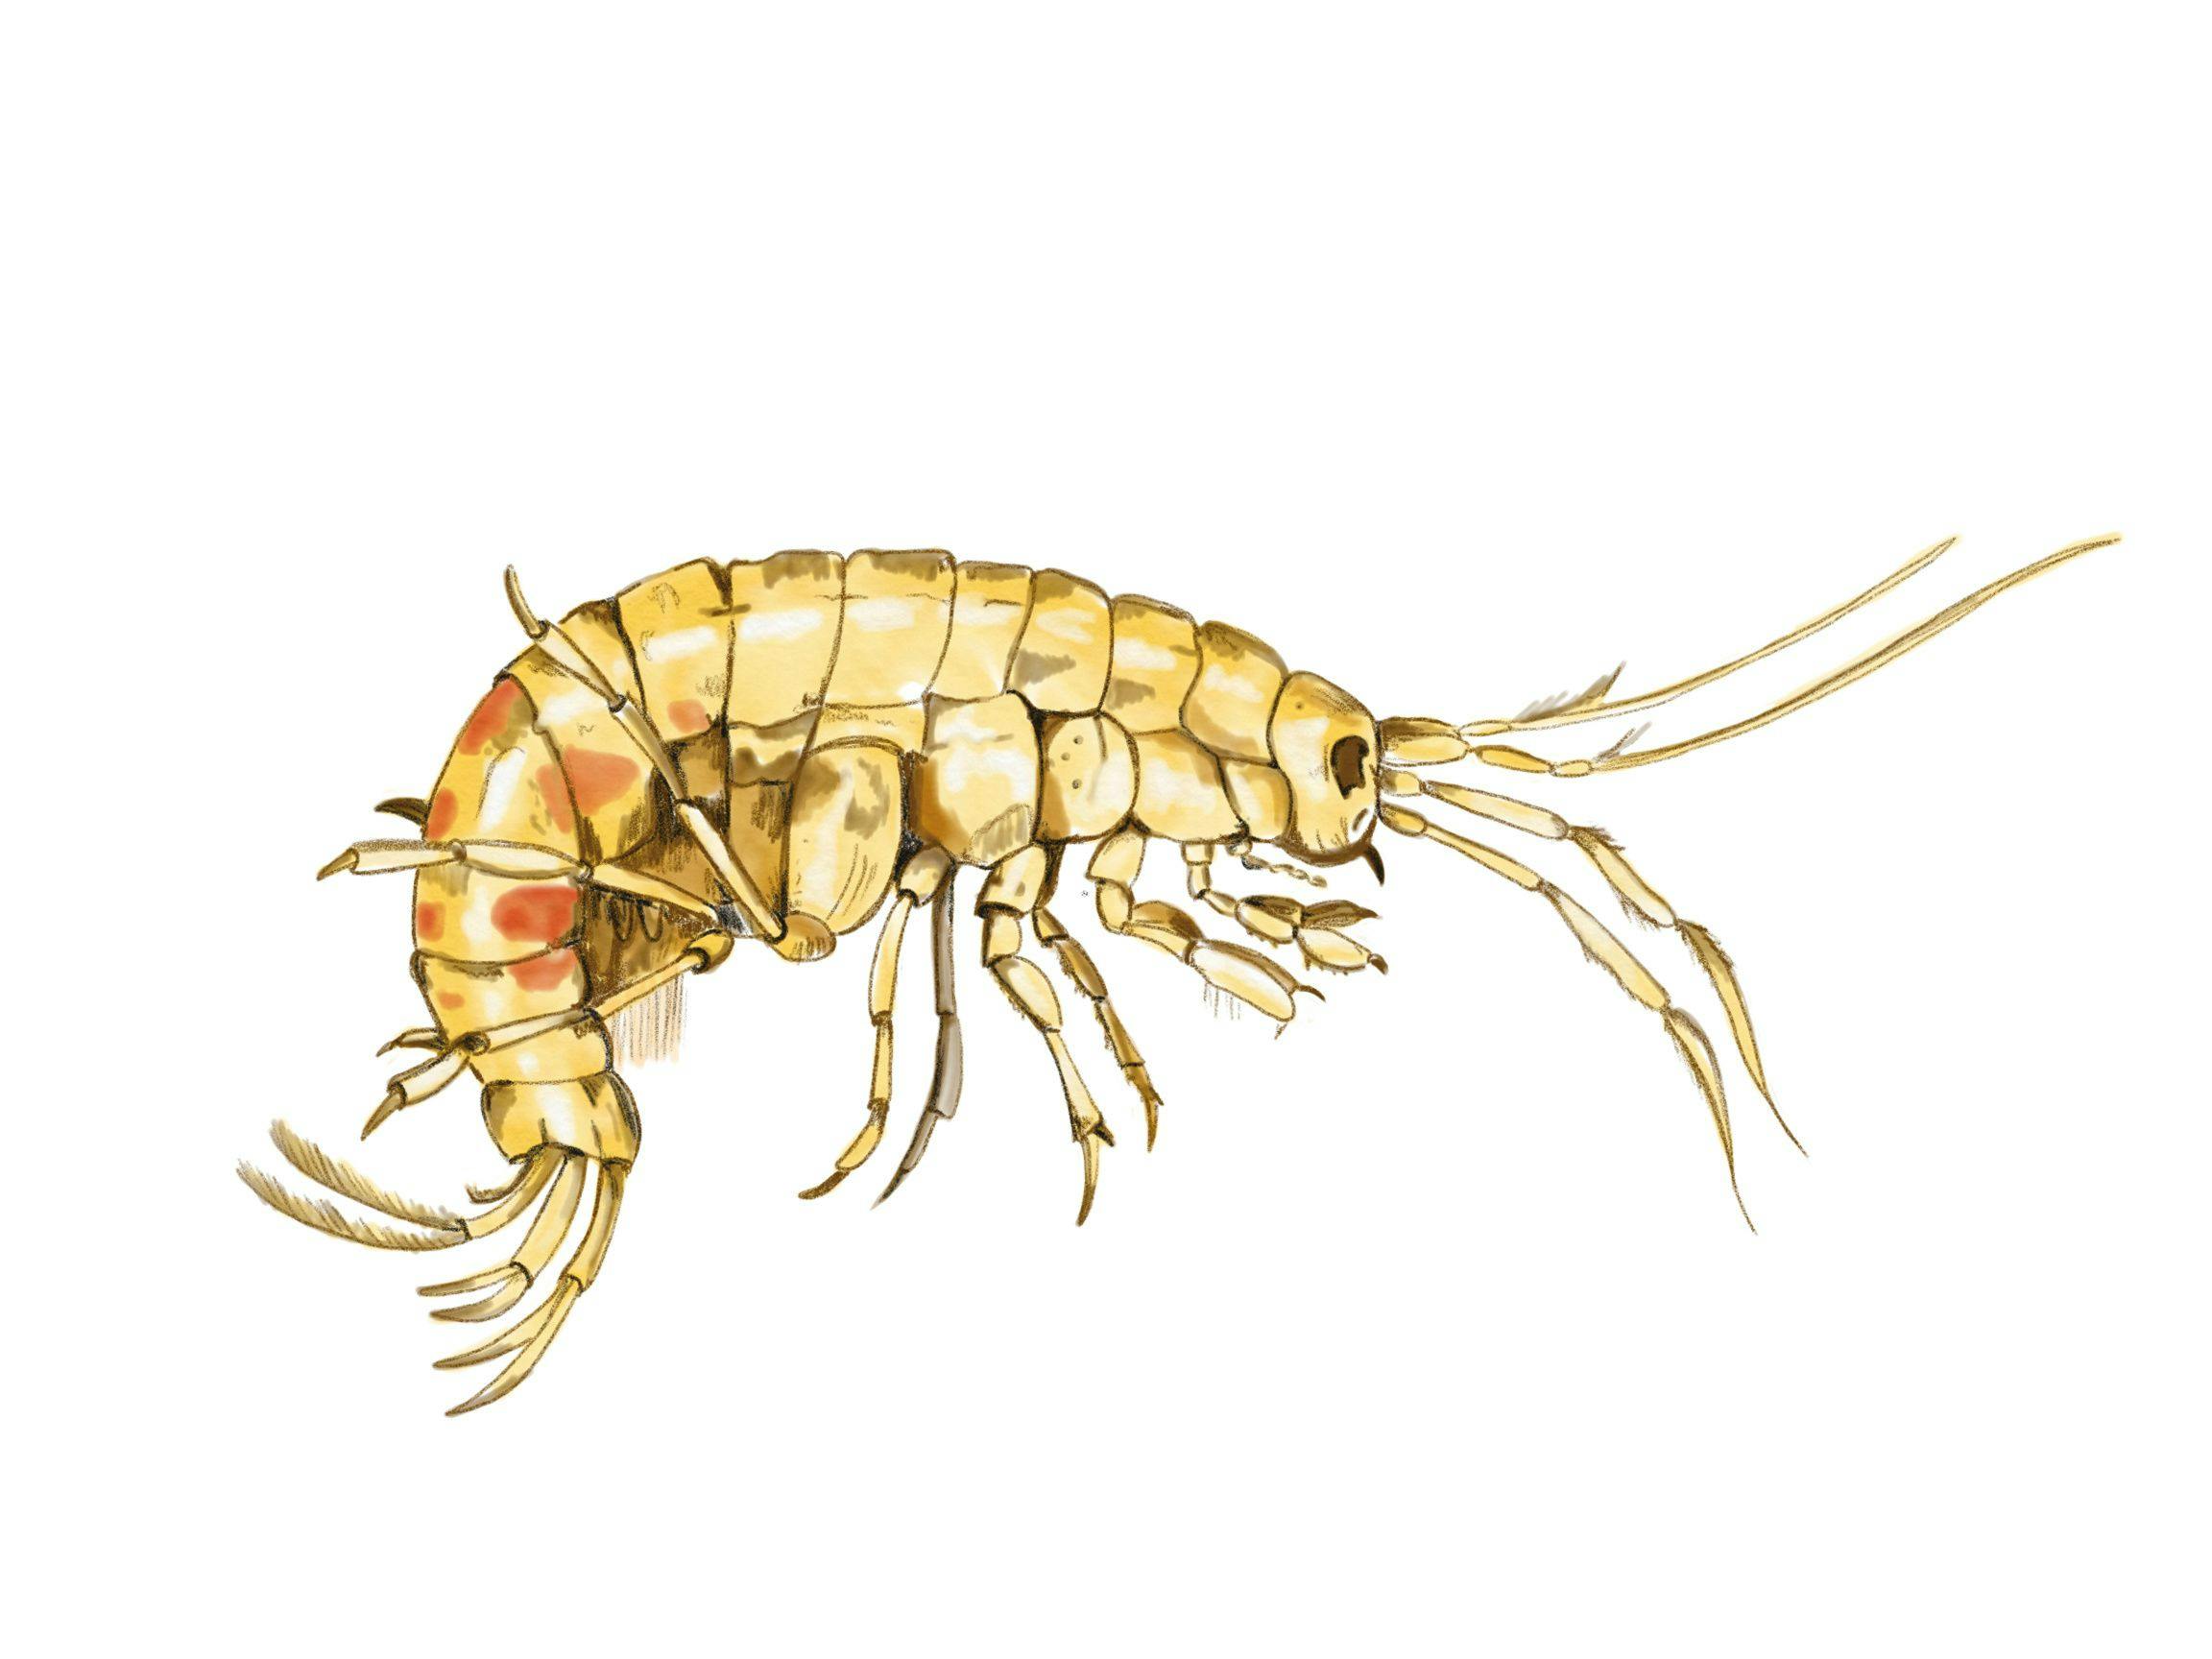 Common freshwater shrimp, Gammarus fossarum | Image Credit: © Melanie - stock.adobe.com